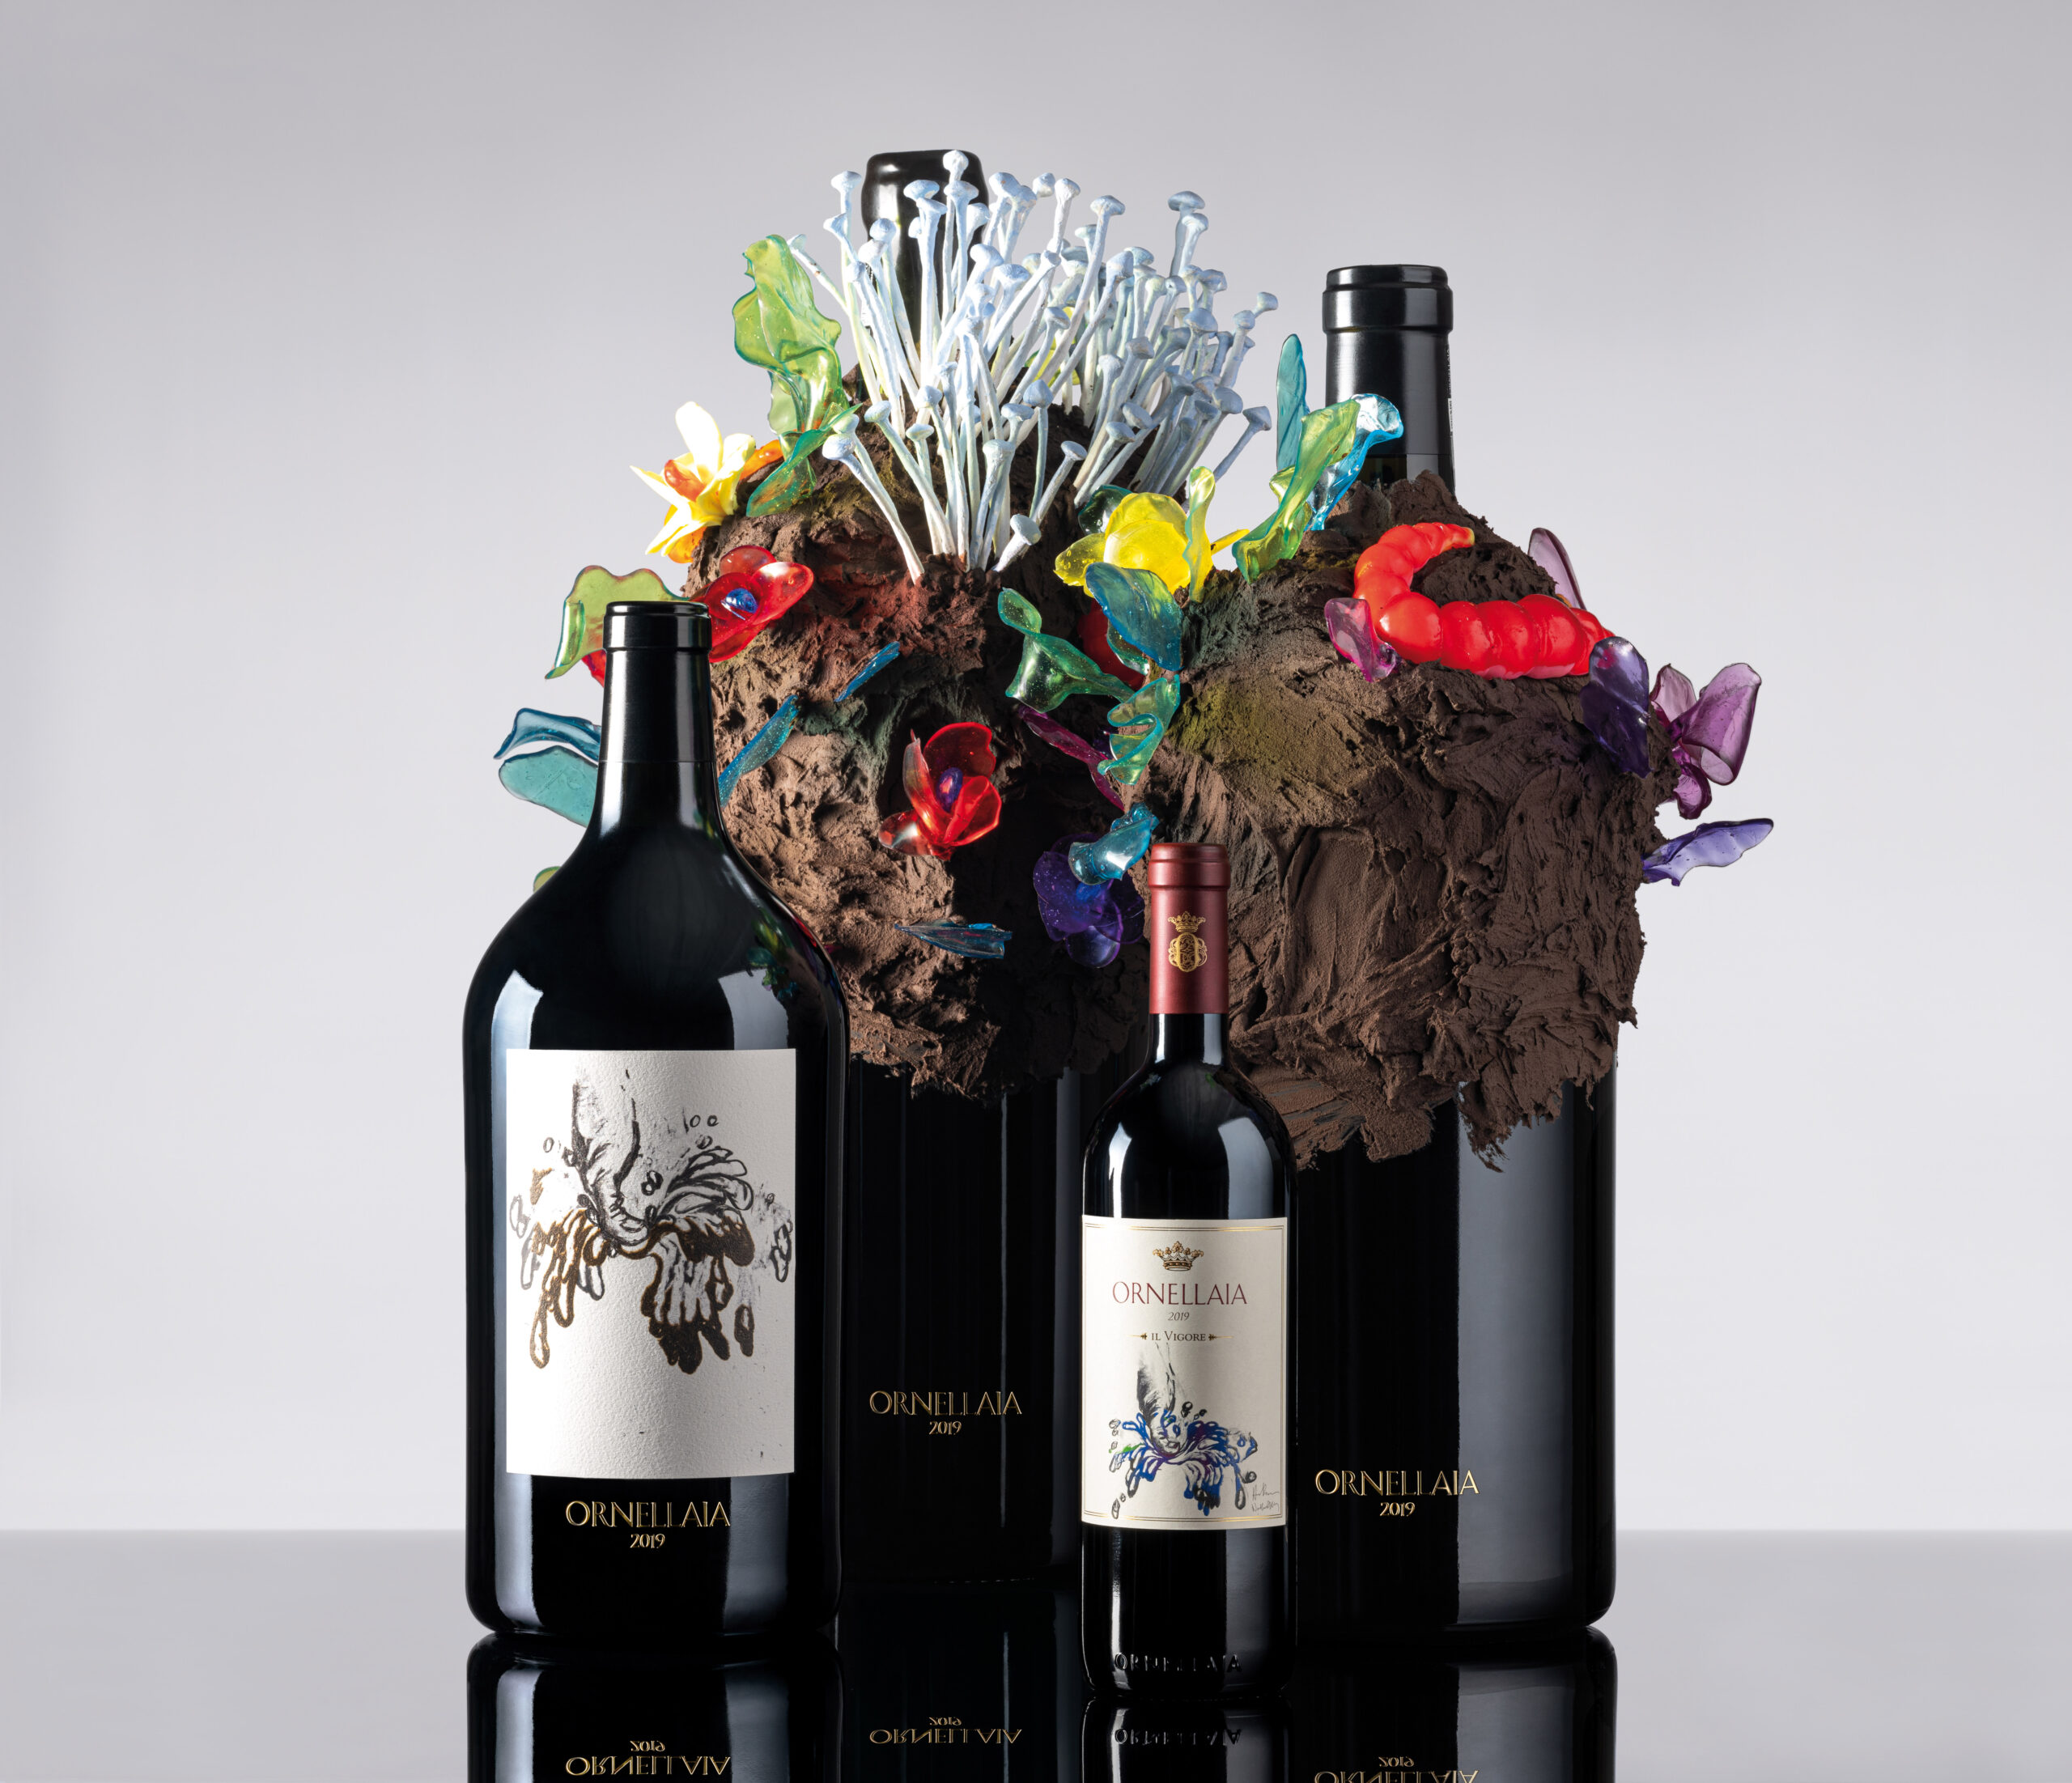 Sotheby’s porta all’asta l’Ornellaia da artista: le bottiglie realizzate da Nathalie Djurberg e Hans Berg